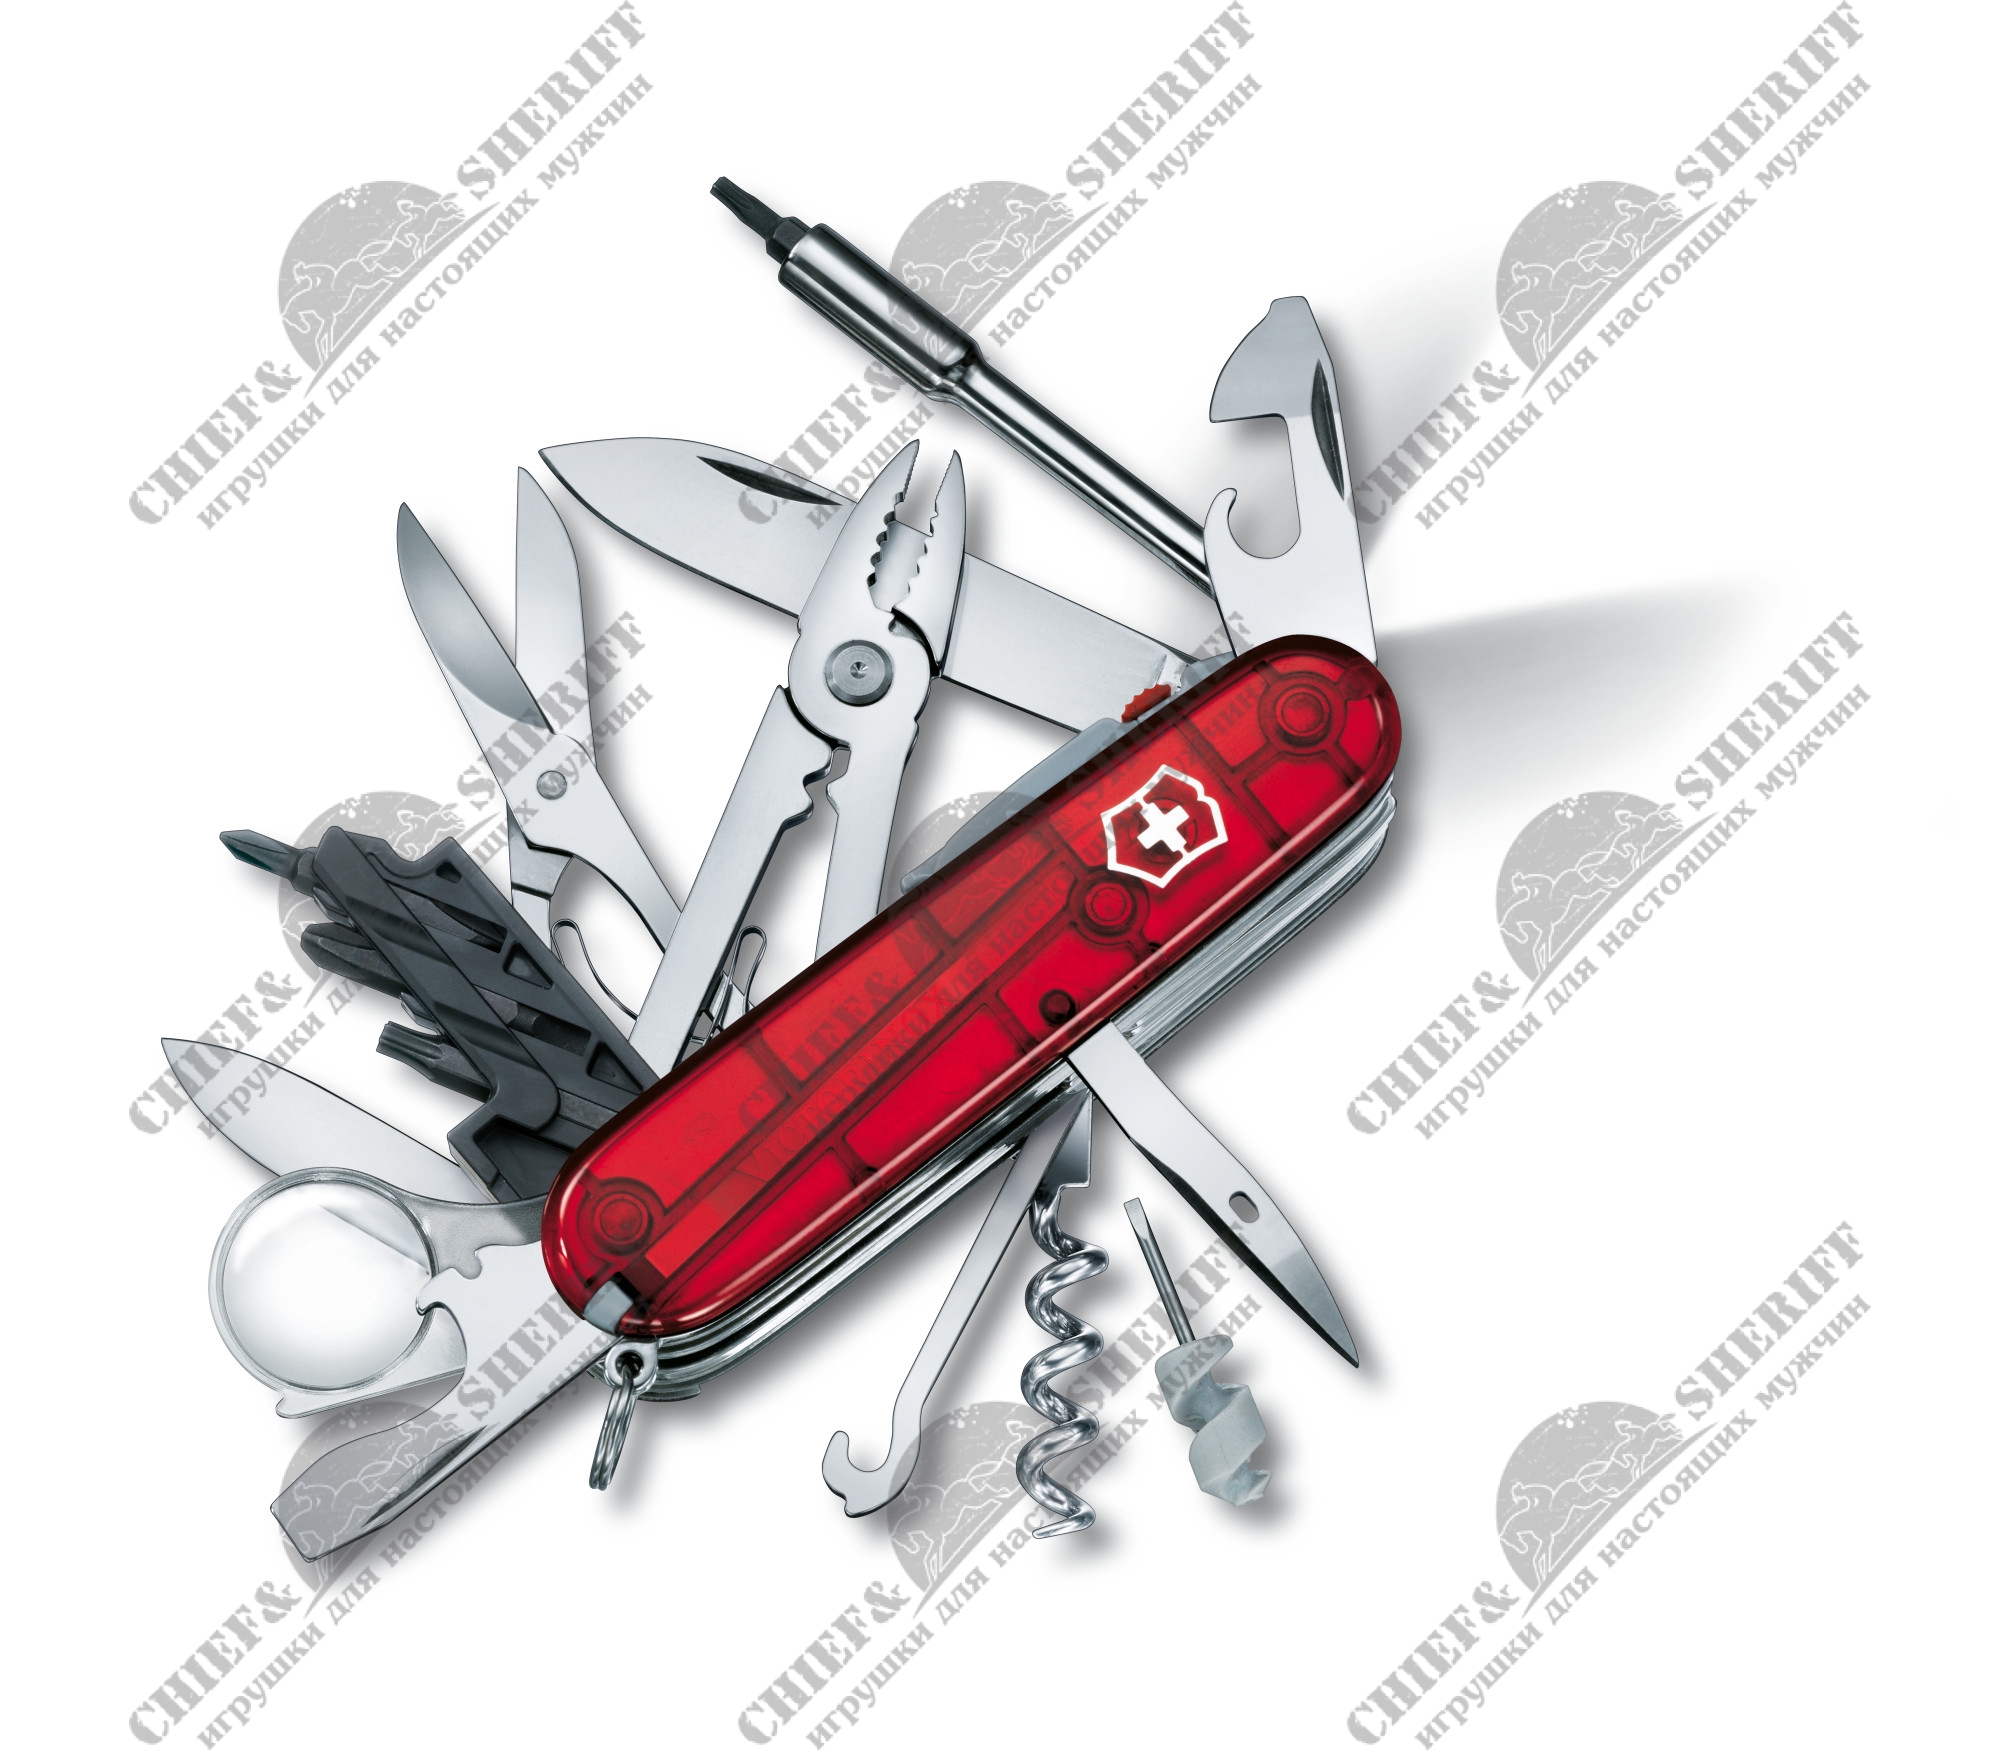 Швейцарский нож Victorinox Cyber Tool Lite (полупрозрачный красный) 91 мм, 36 функций, 1.7925.T